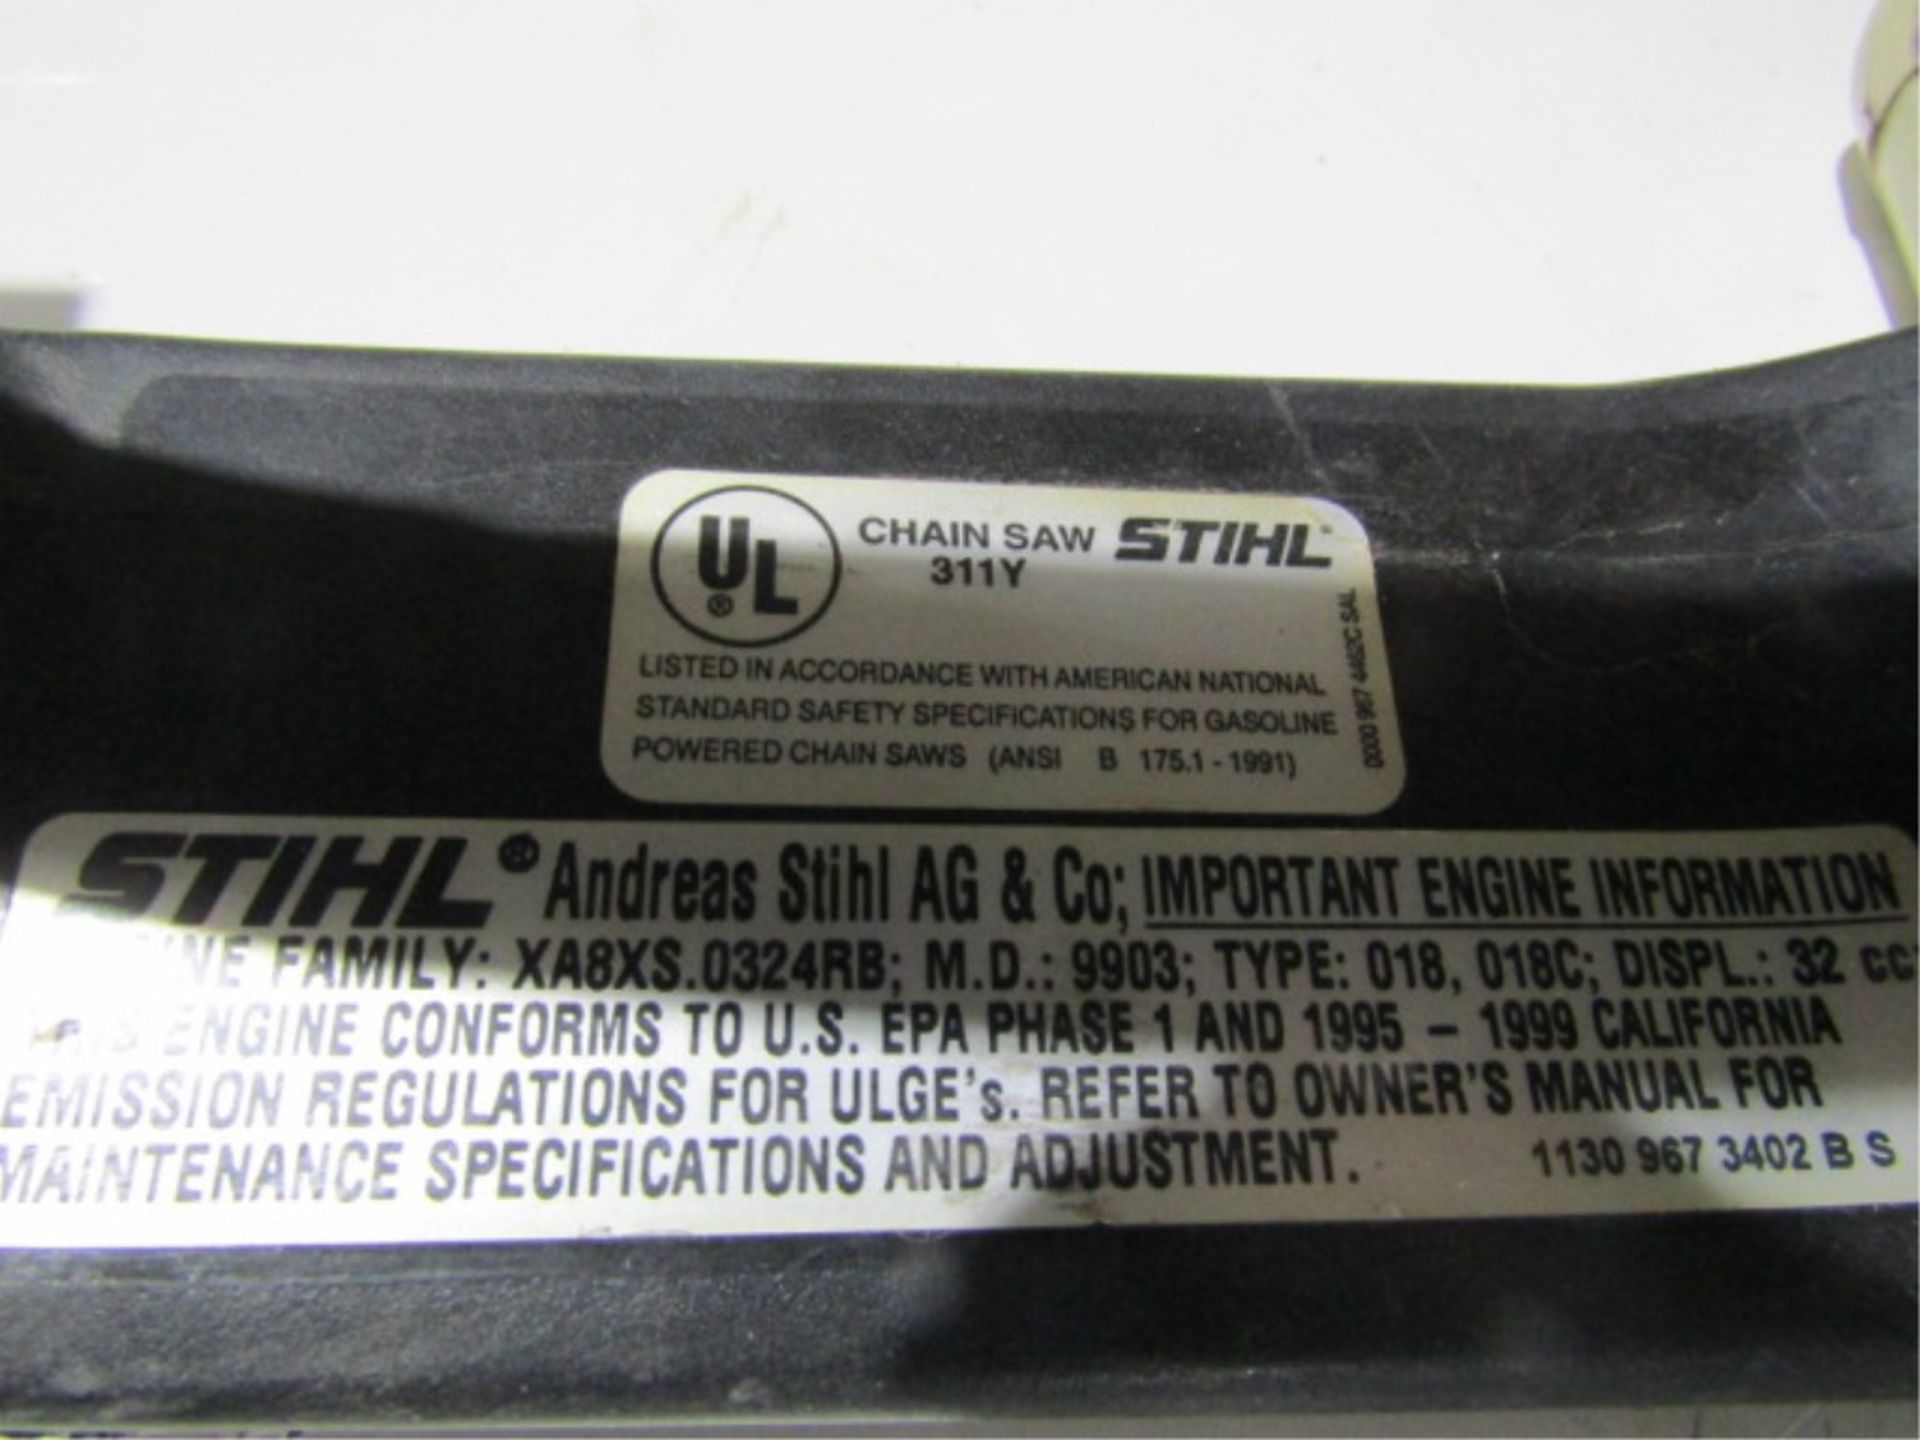 Stihl Chain Saw Model 311Y - Image 2 of 3